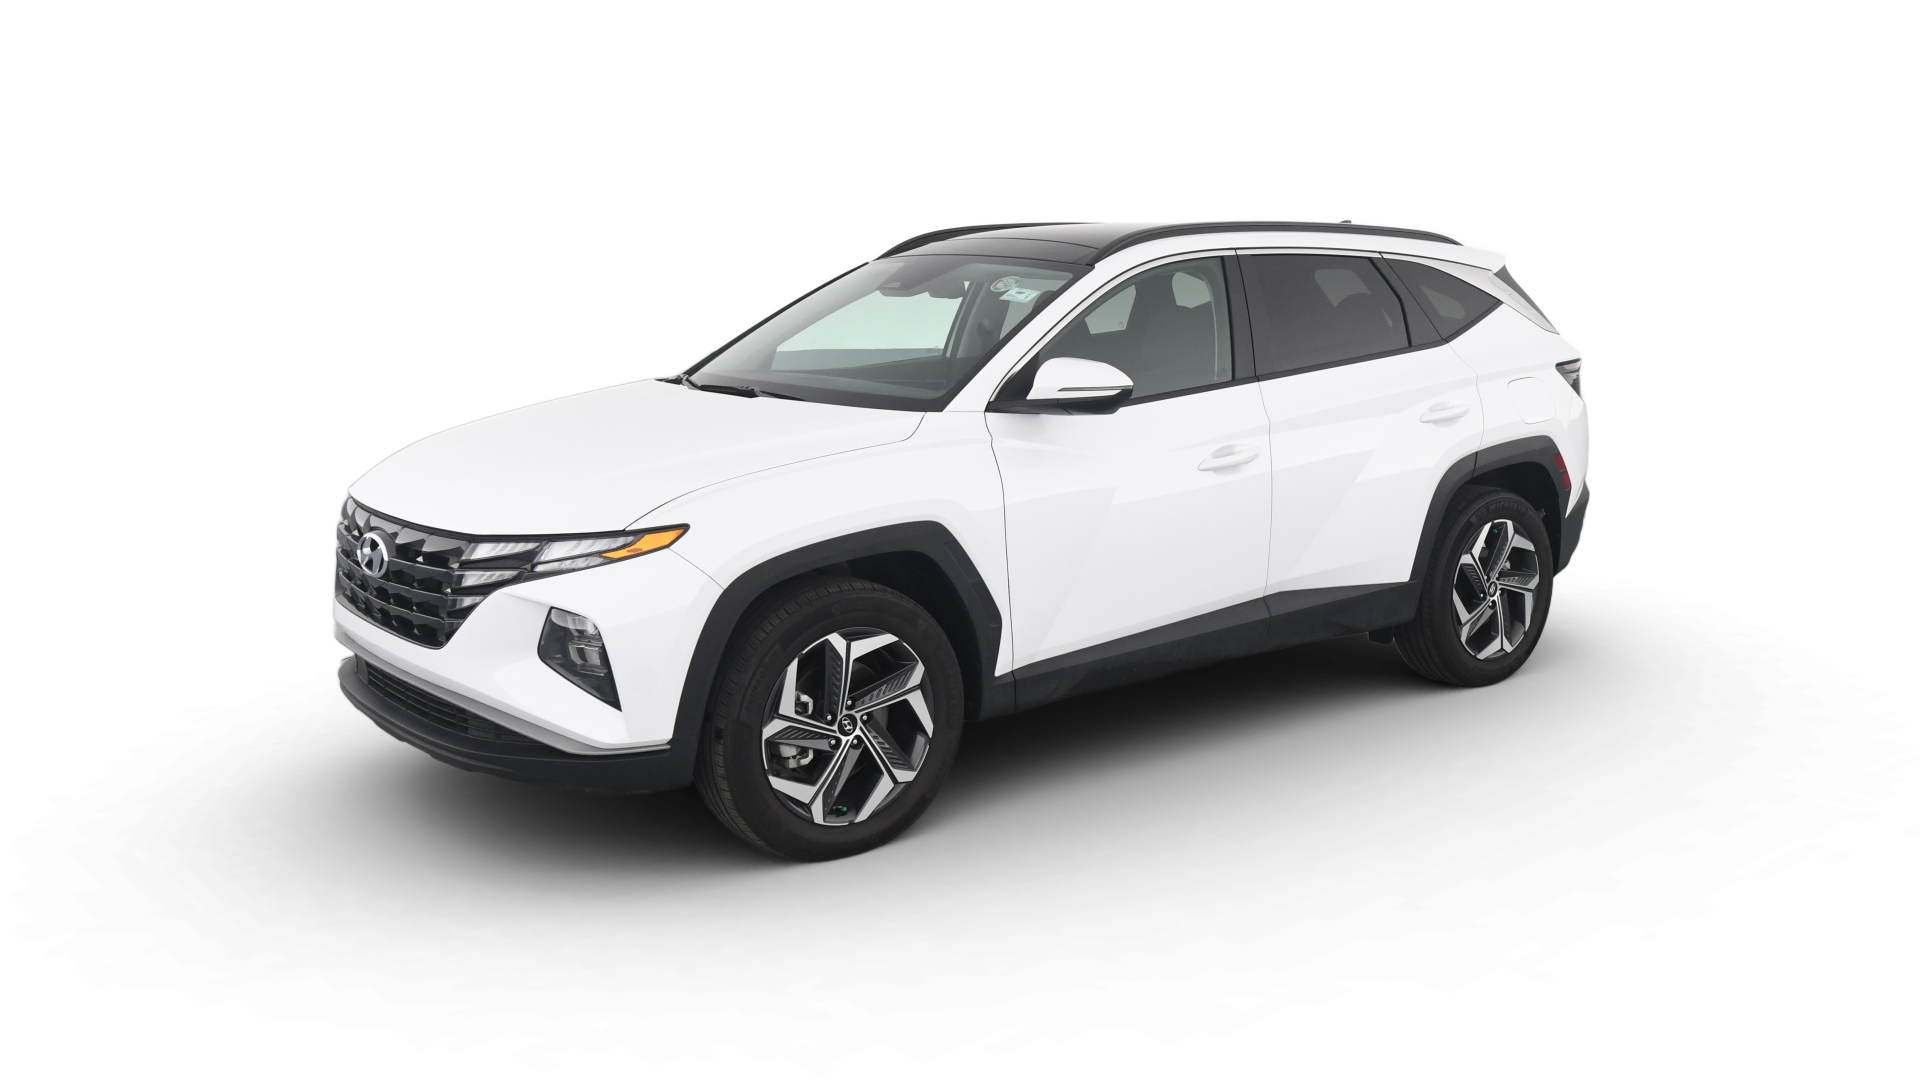 Hyundai Tucson Hybrid model image.